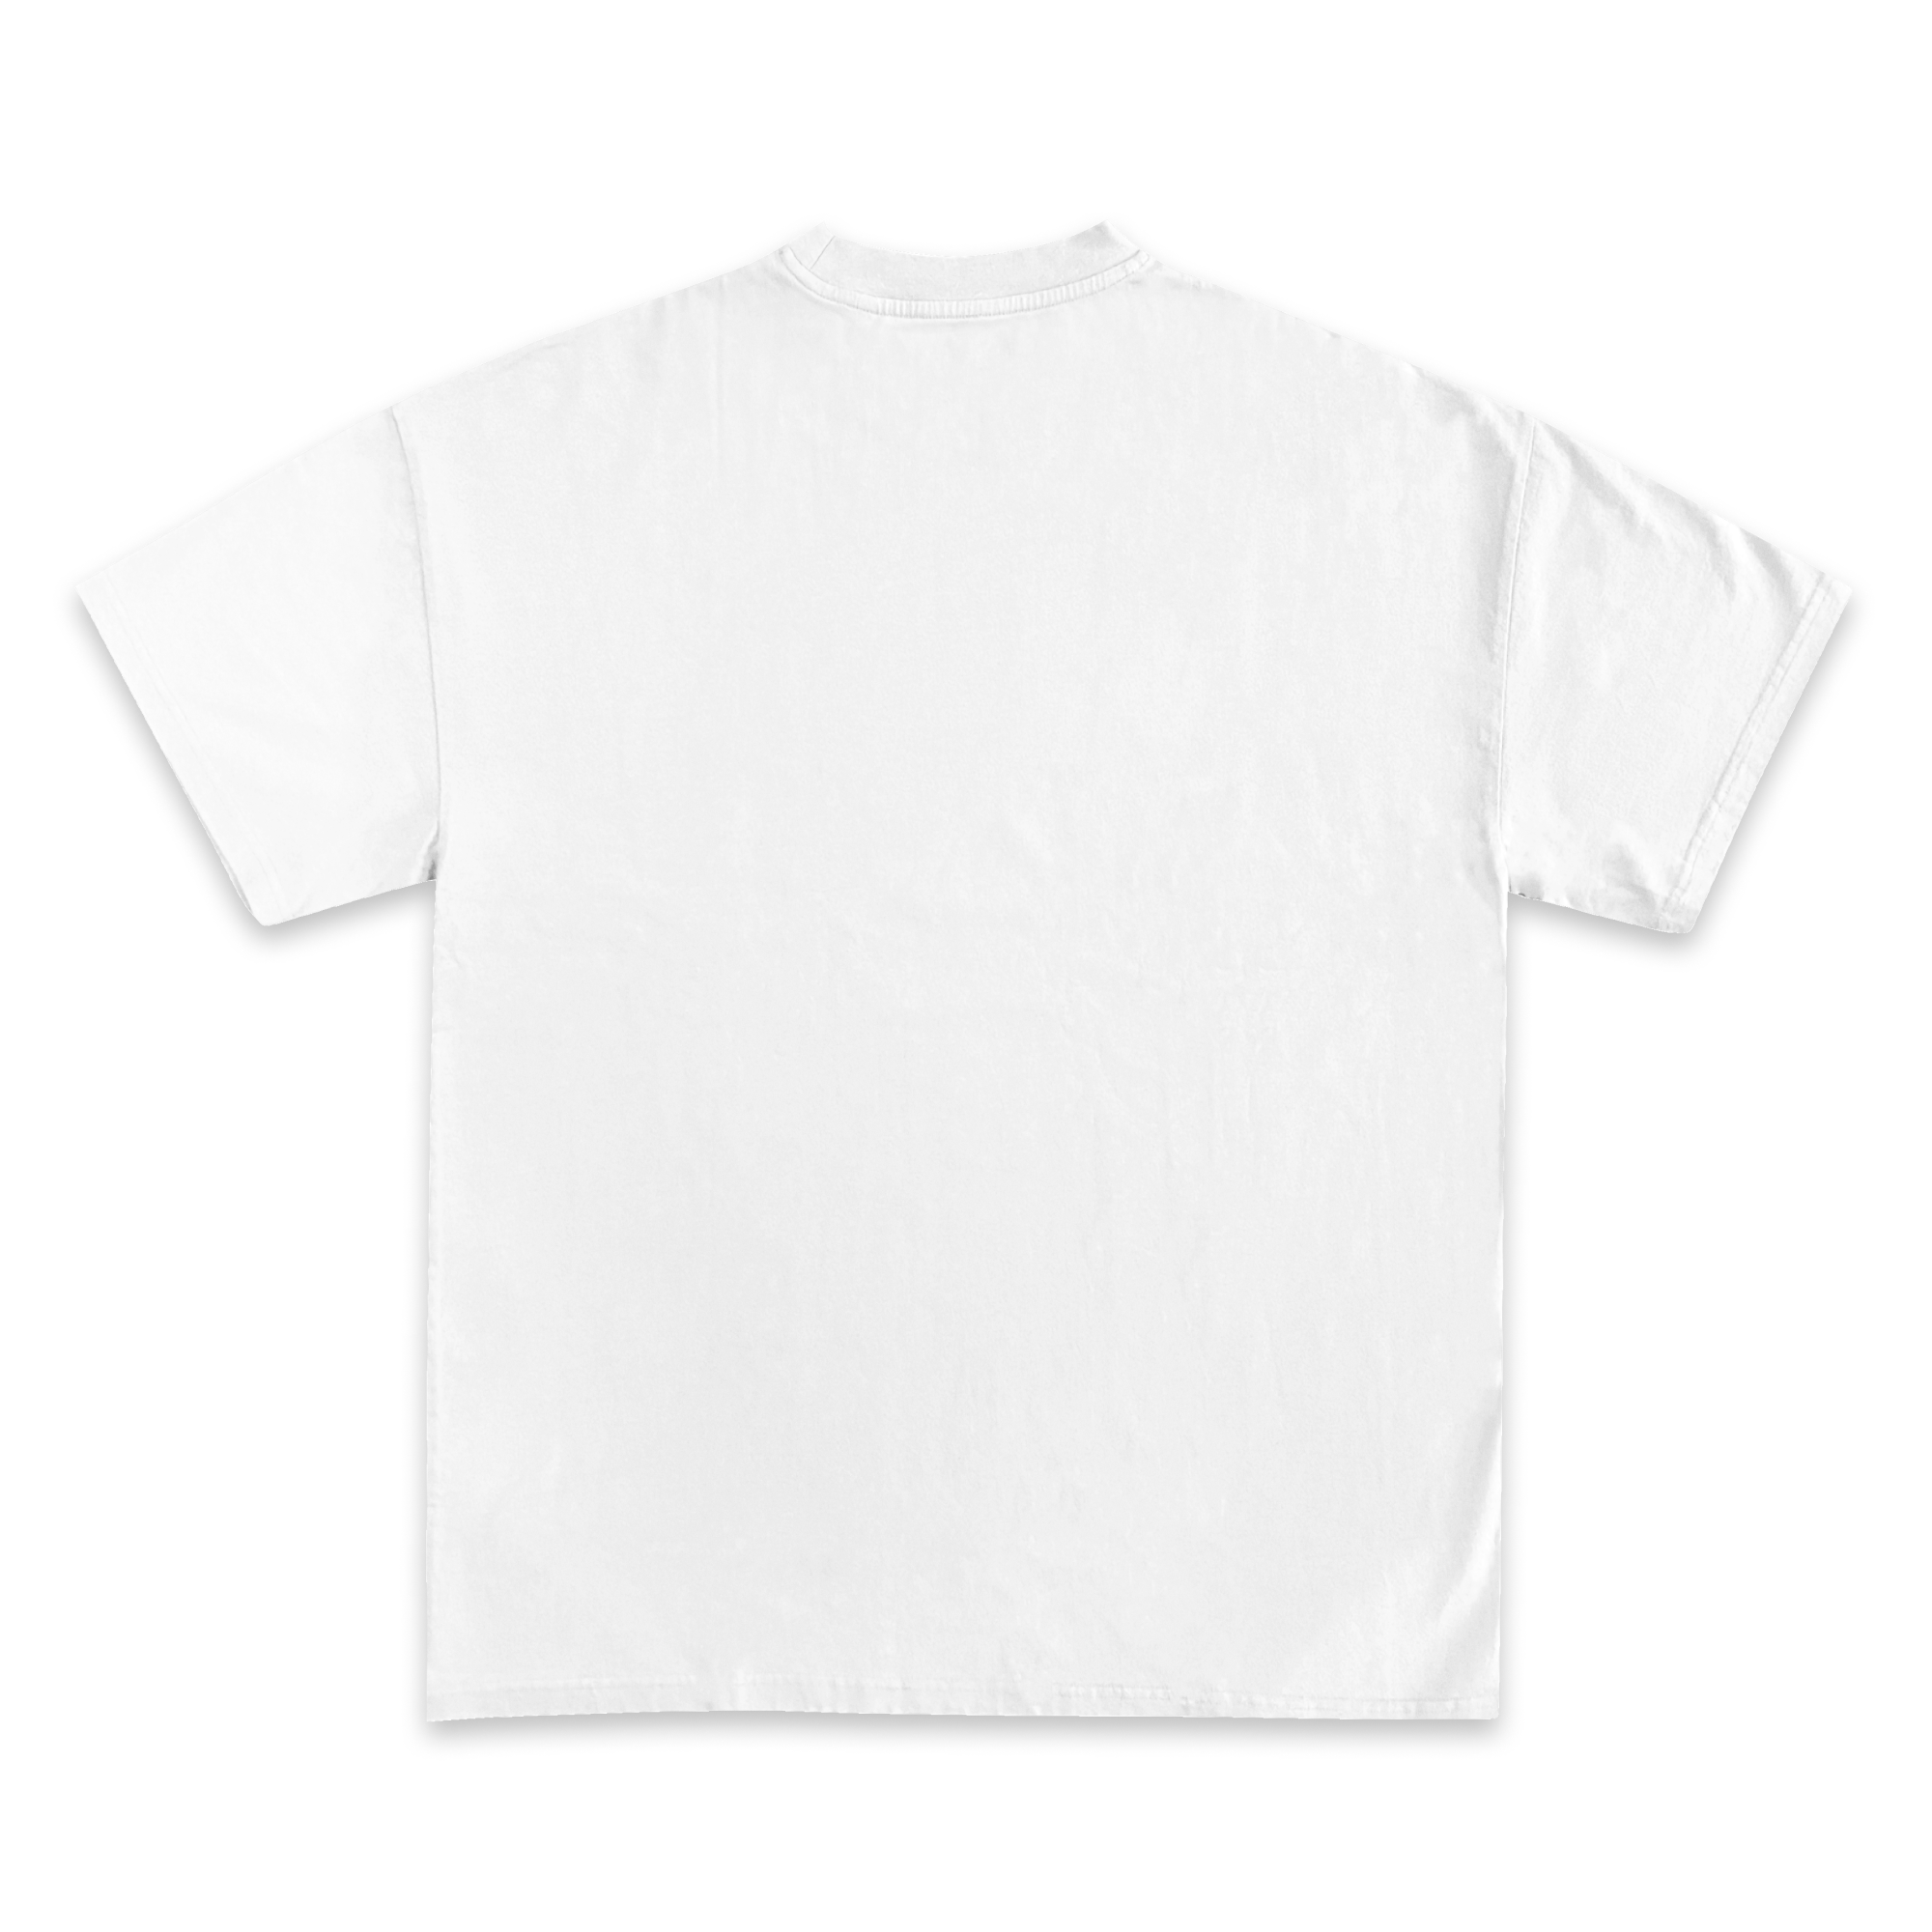 Lil Uzi Vert Jumbo Graphic T-Shirt